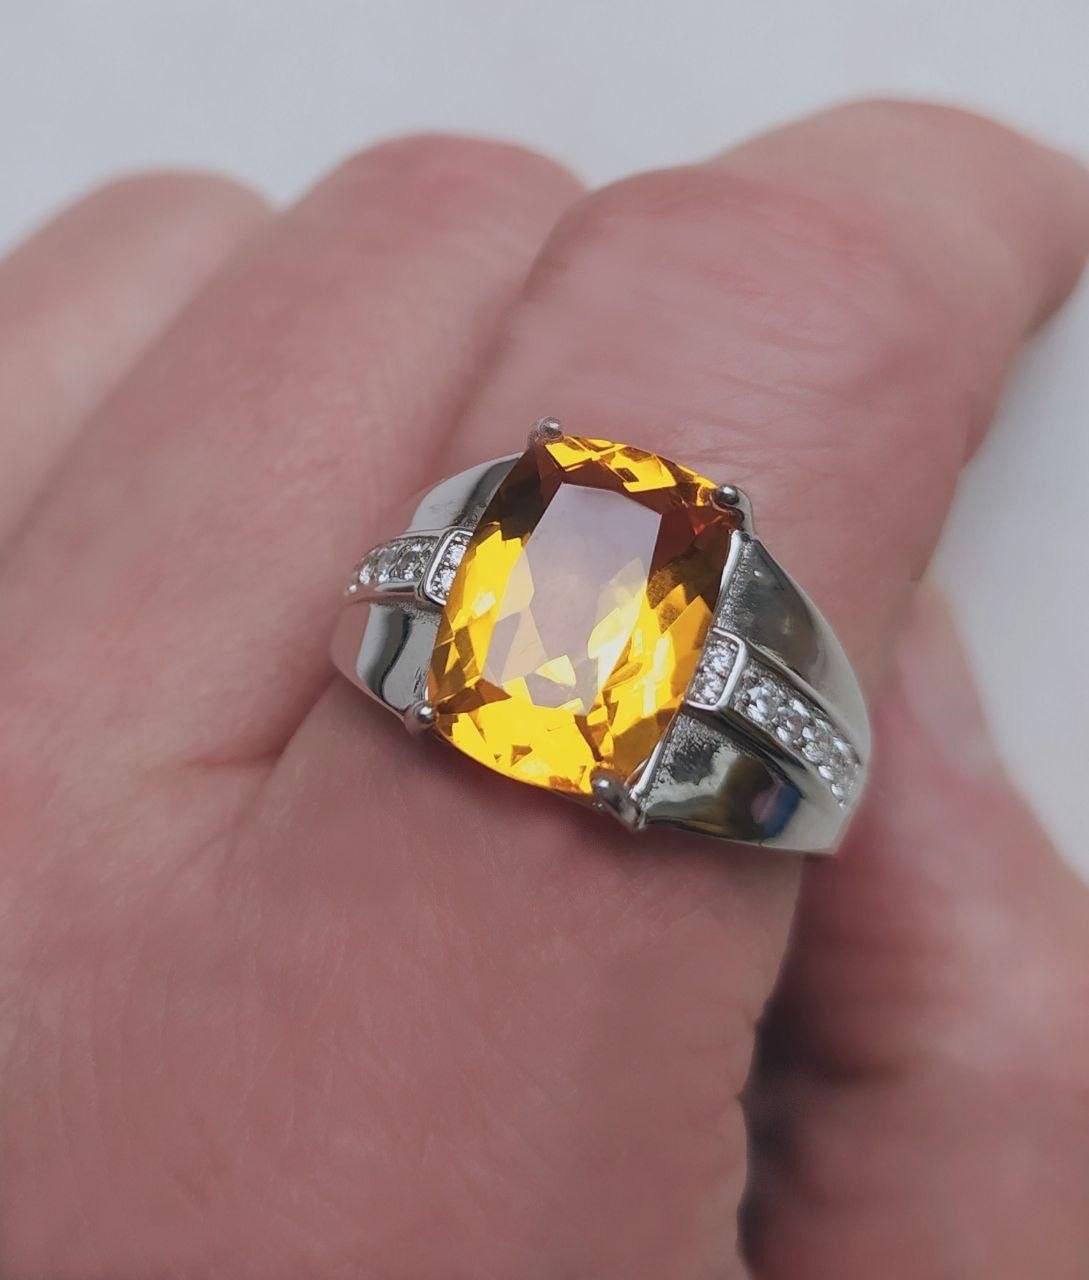 Details about   Natural Citrine Square Cut Gemstone 925 Sterling Silver Men's Designer Ring 